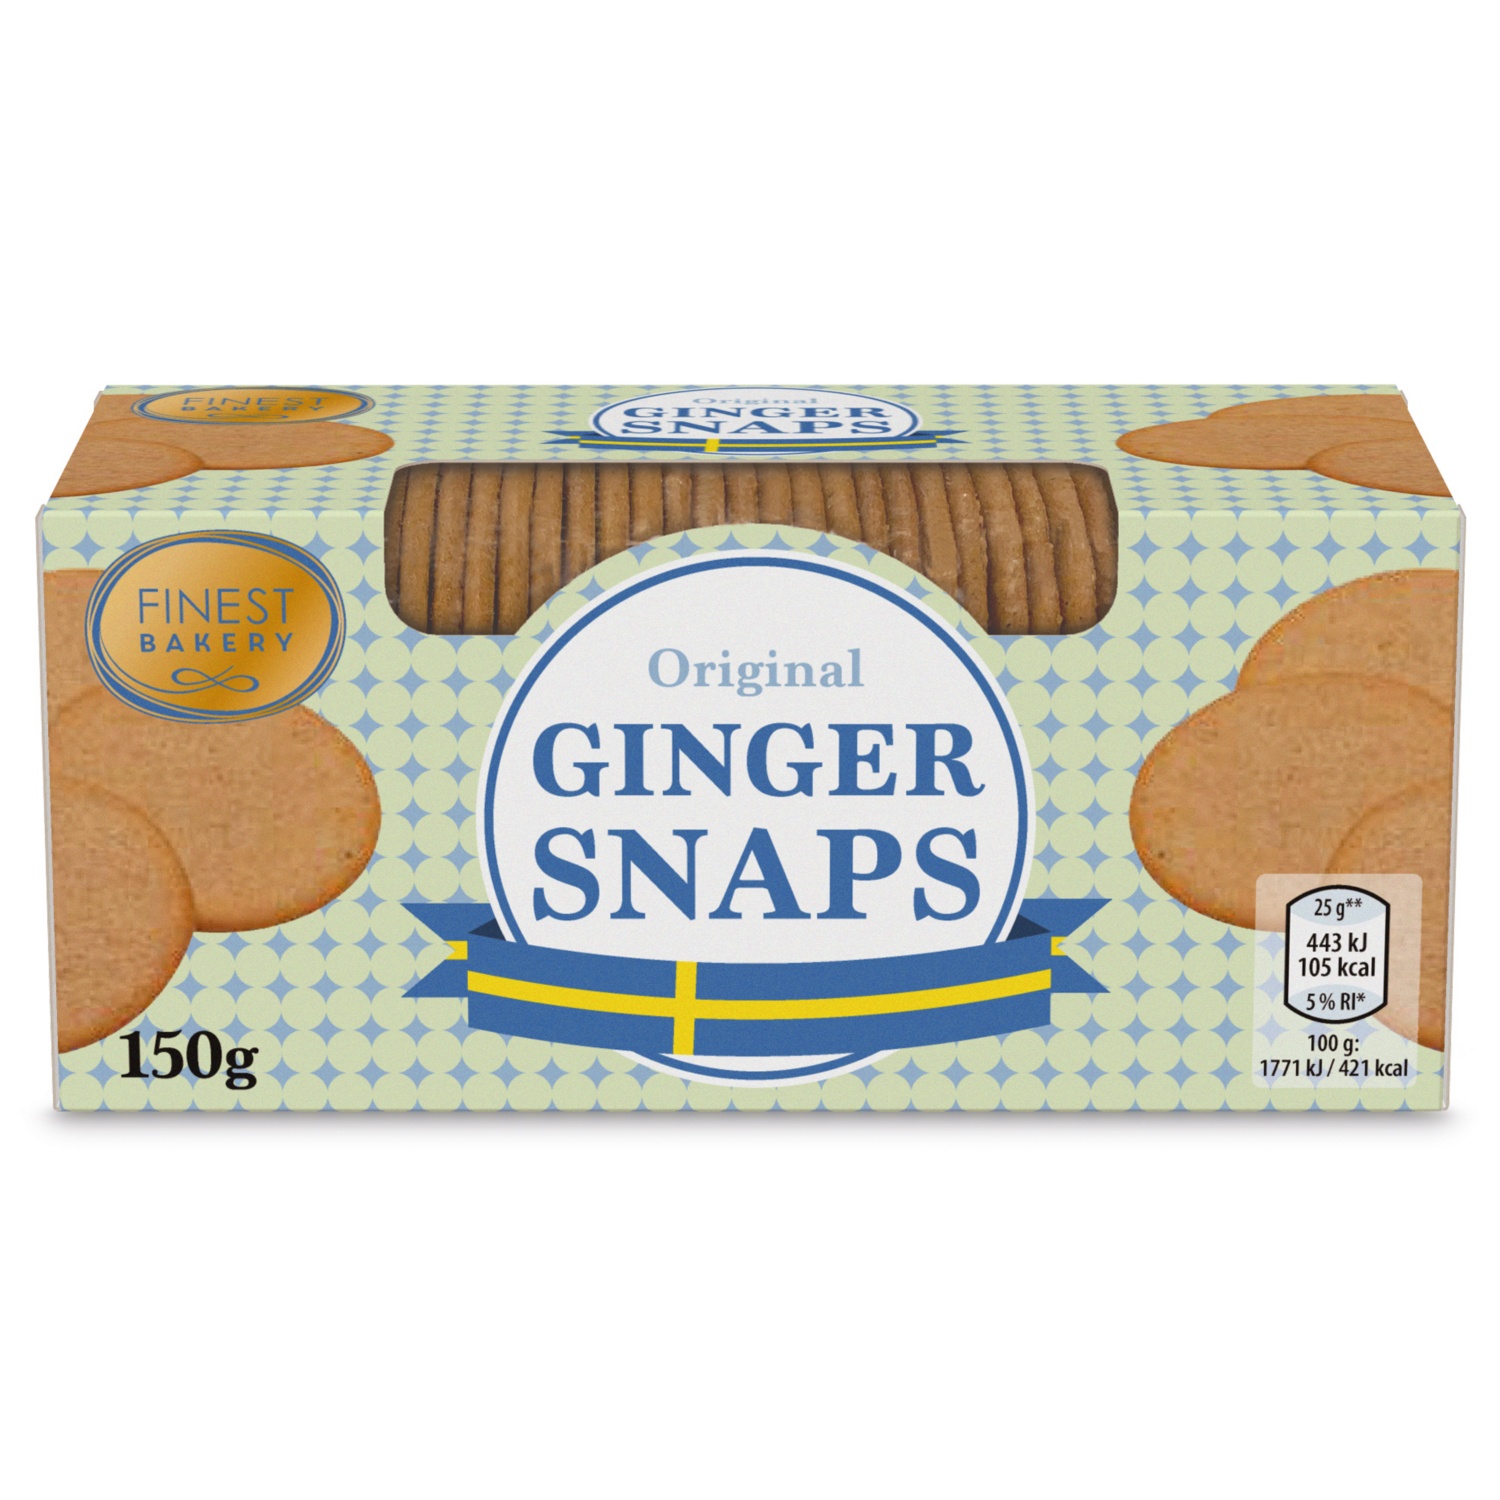 FINEST BAKERY Ginger Snaps